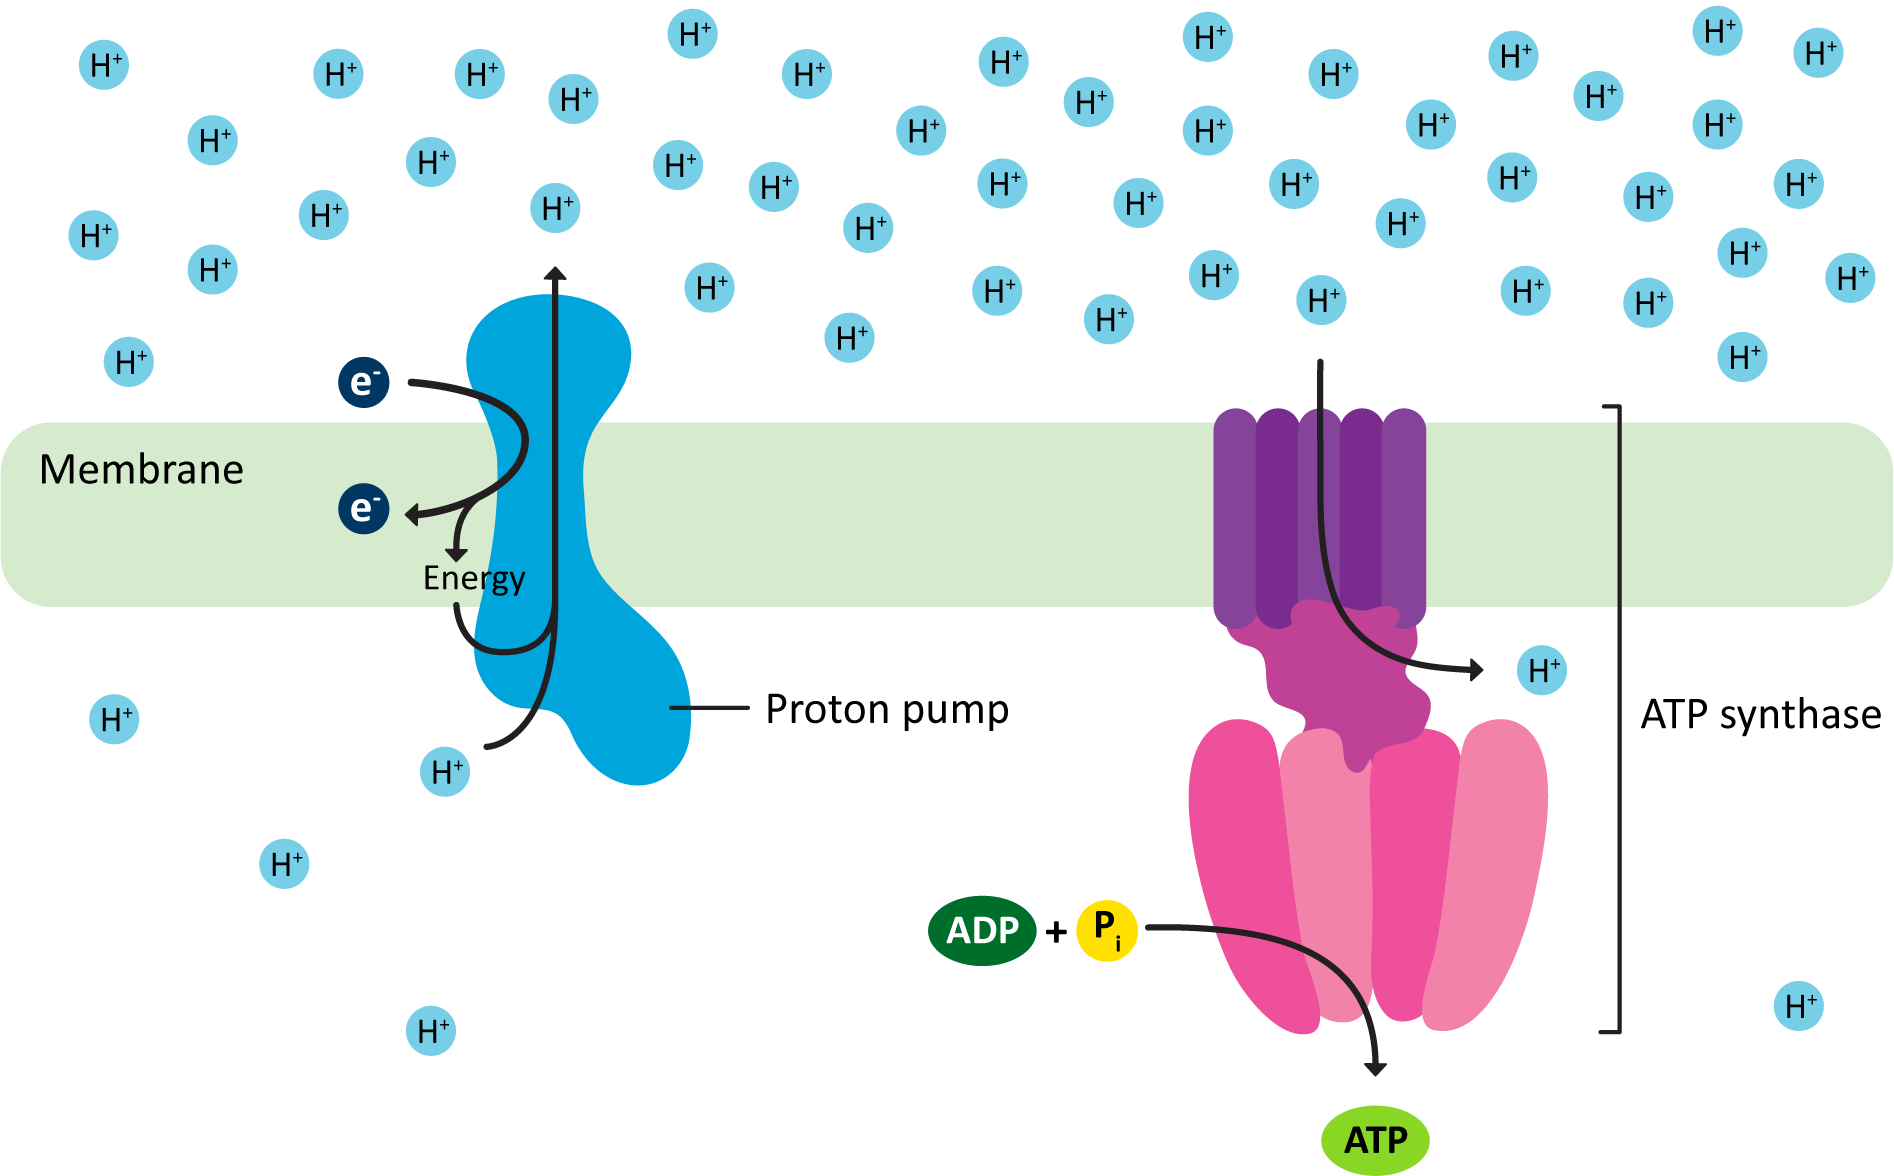 ATP synthesis via chemiosmotic coupling.